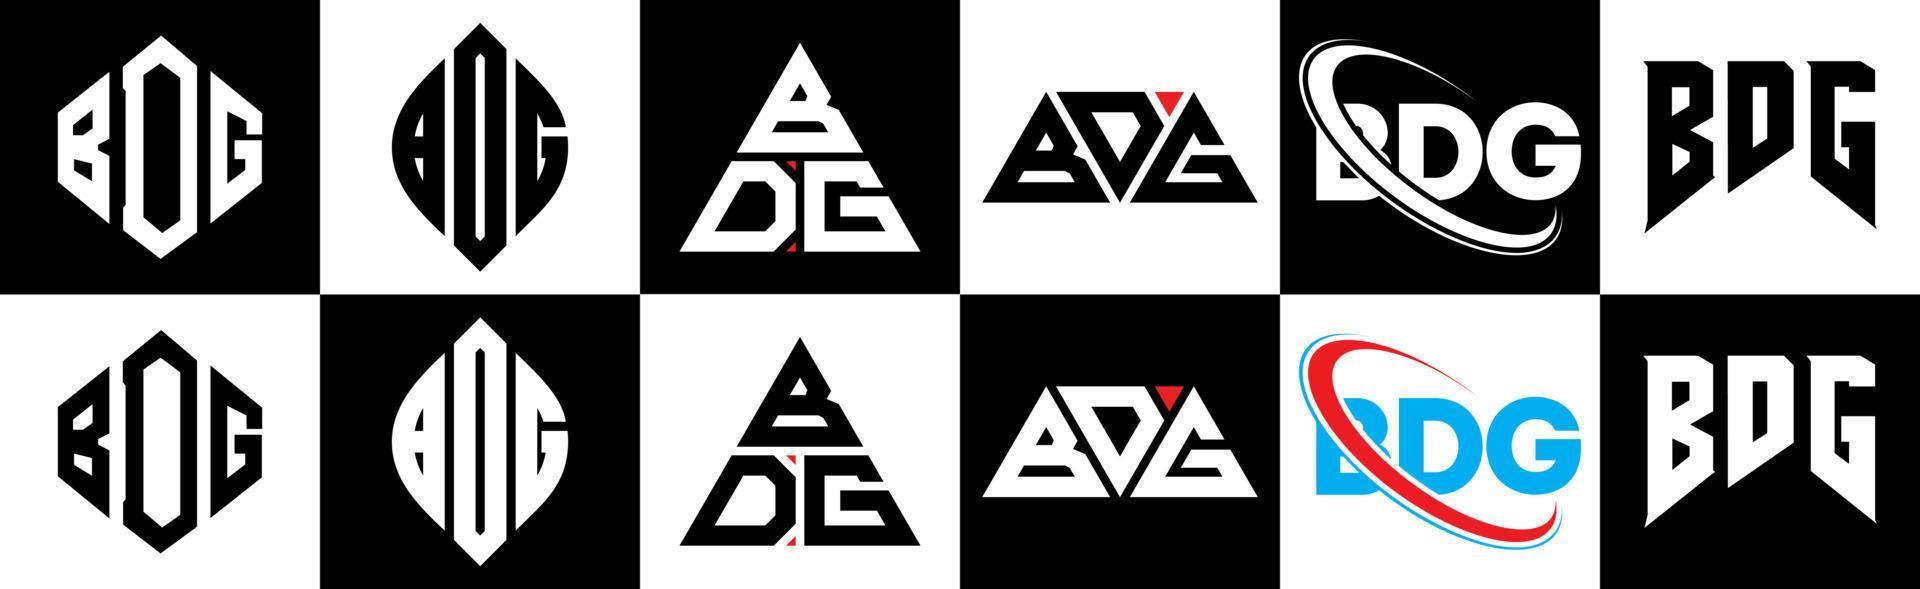 création de logo de lettre bdg en six styles. bdg polygone, cercle, triangle, hexagone, style plat et simple avec logo de lettre de variation de couleur noir et blanc dans un plan de travail. bdg logo minimaliste et classique vecteur